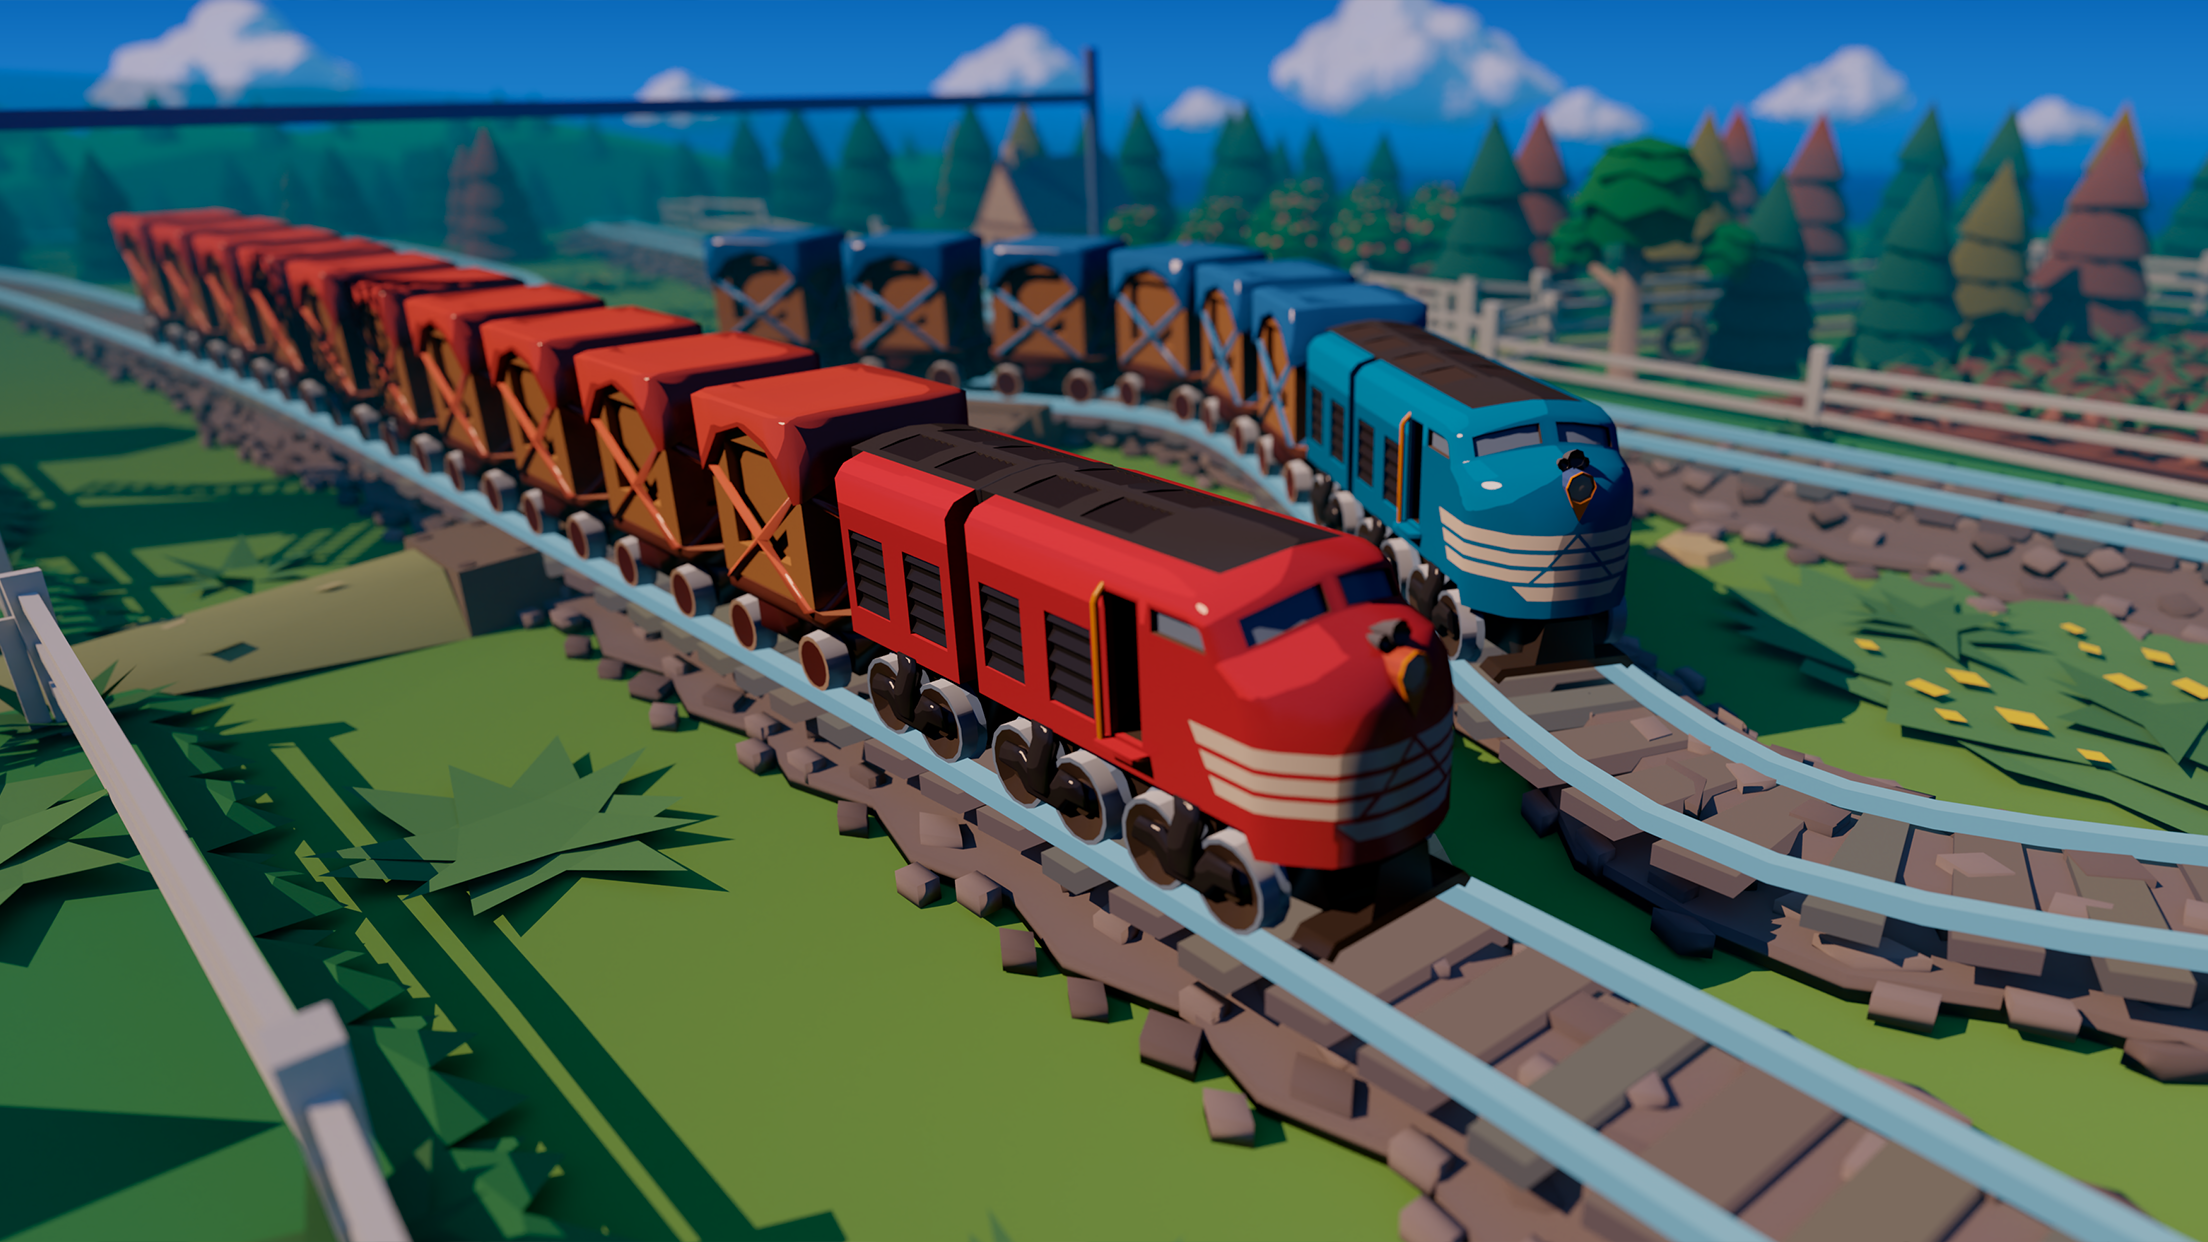 Screenshot 1 of โลกตัวนำรถไฟ 21.0.4